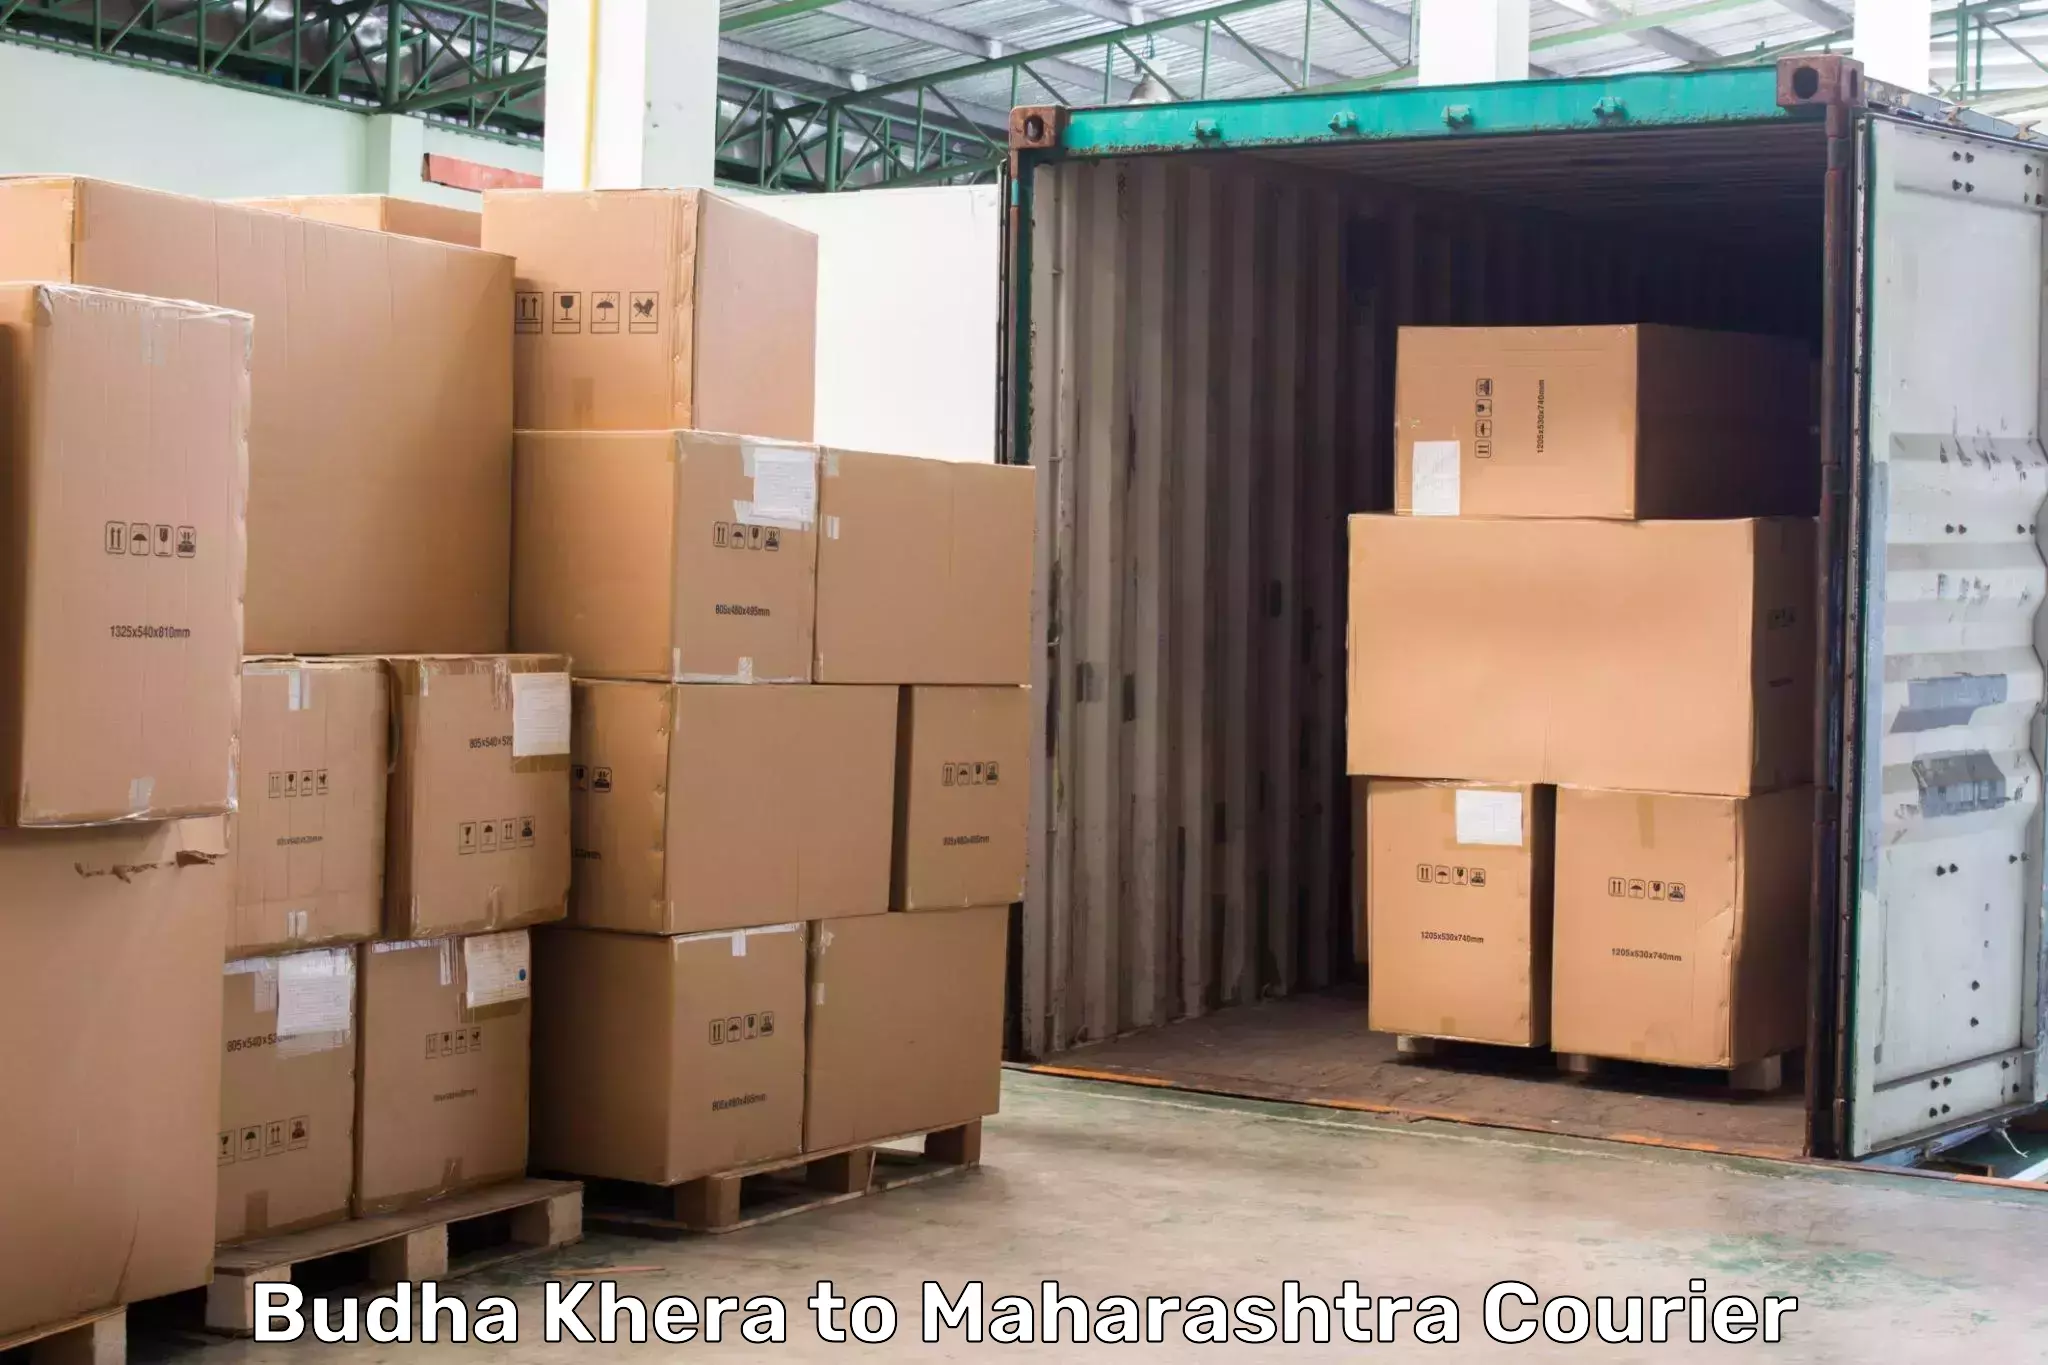 Multi-city courier Budha Khera to Navi Mumbai